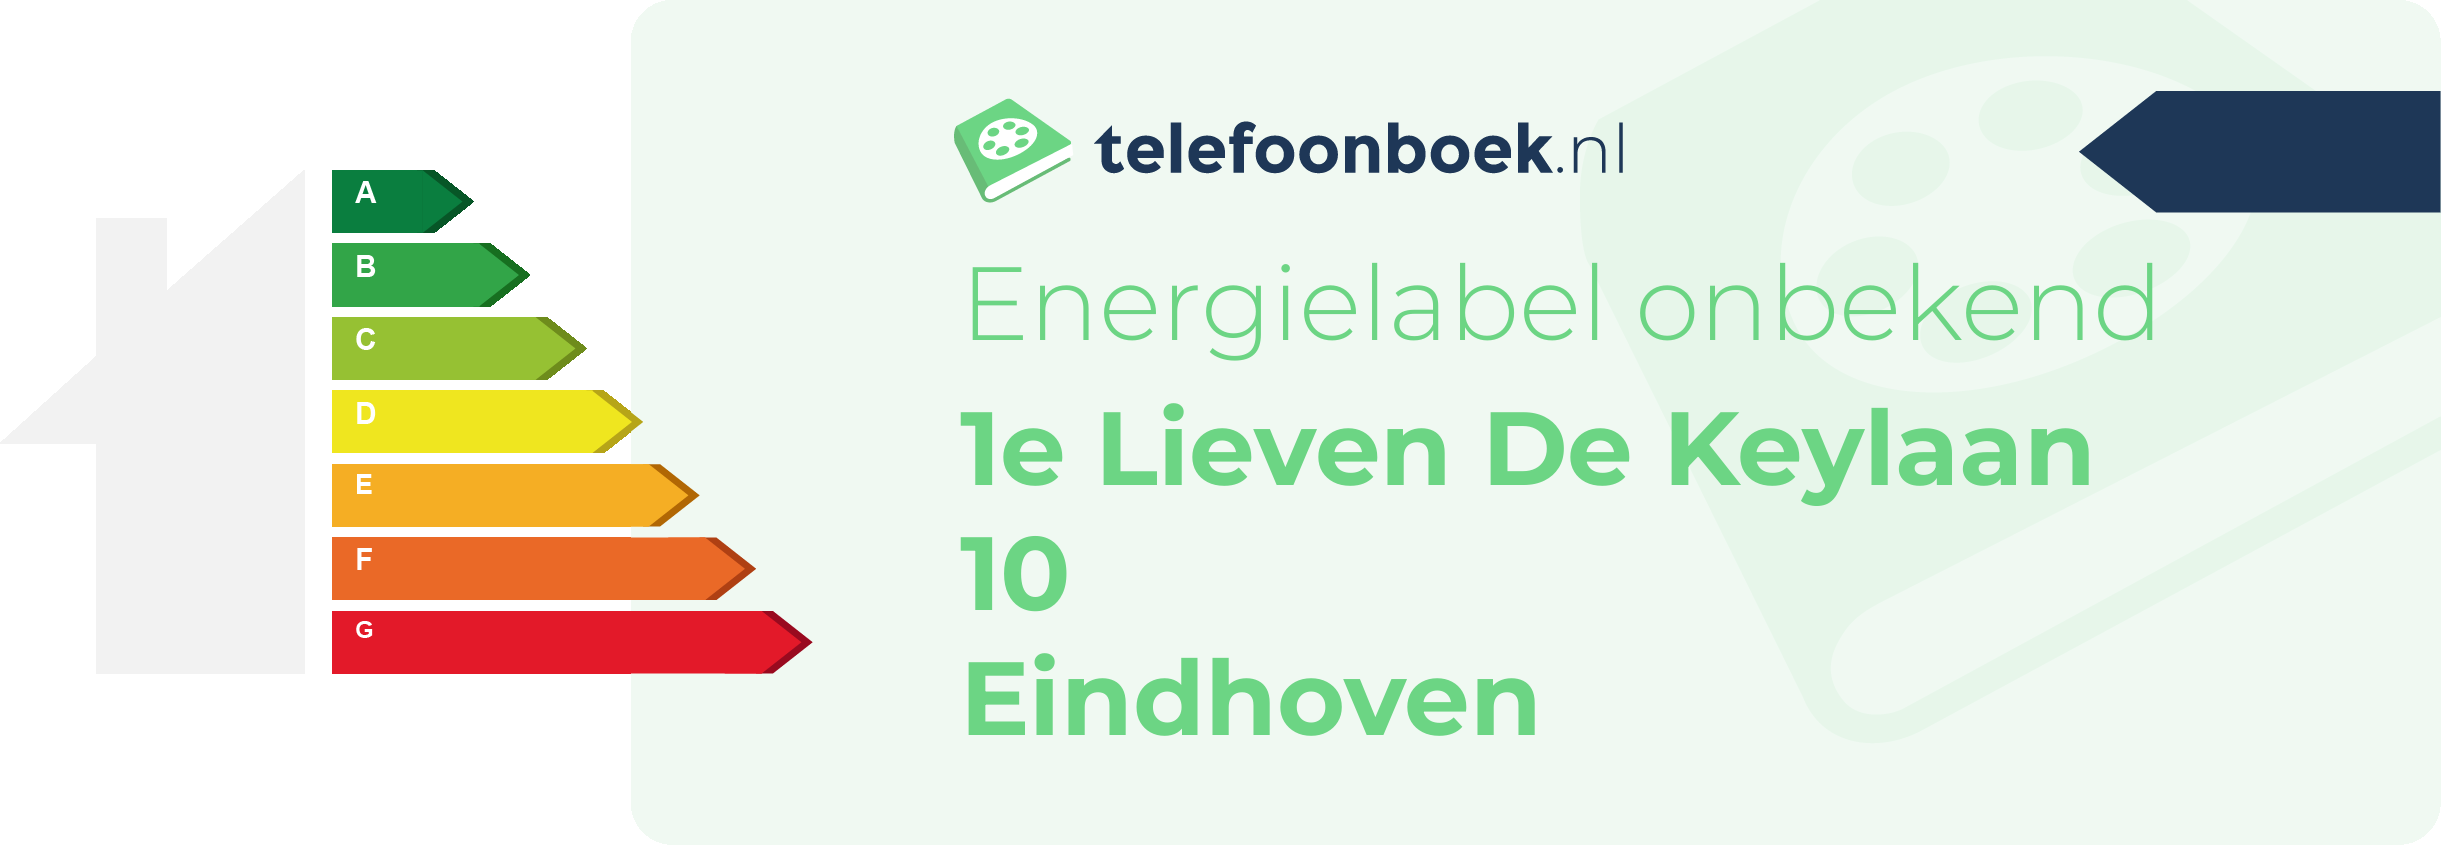 Energielabel 1e Lieven De Keylaan 10 Eindhoven